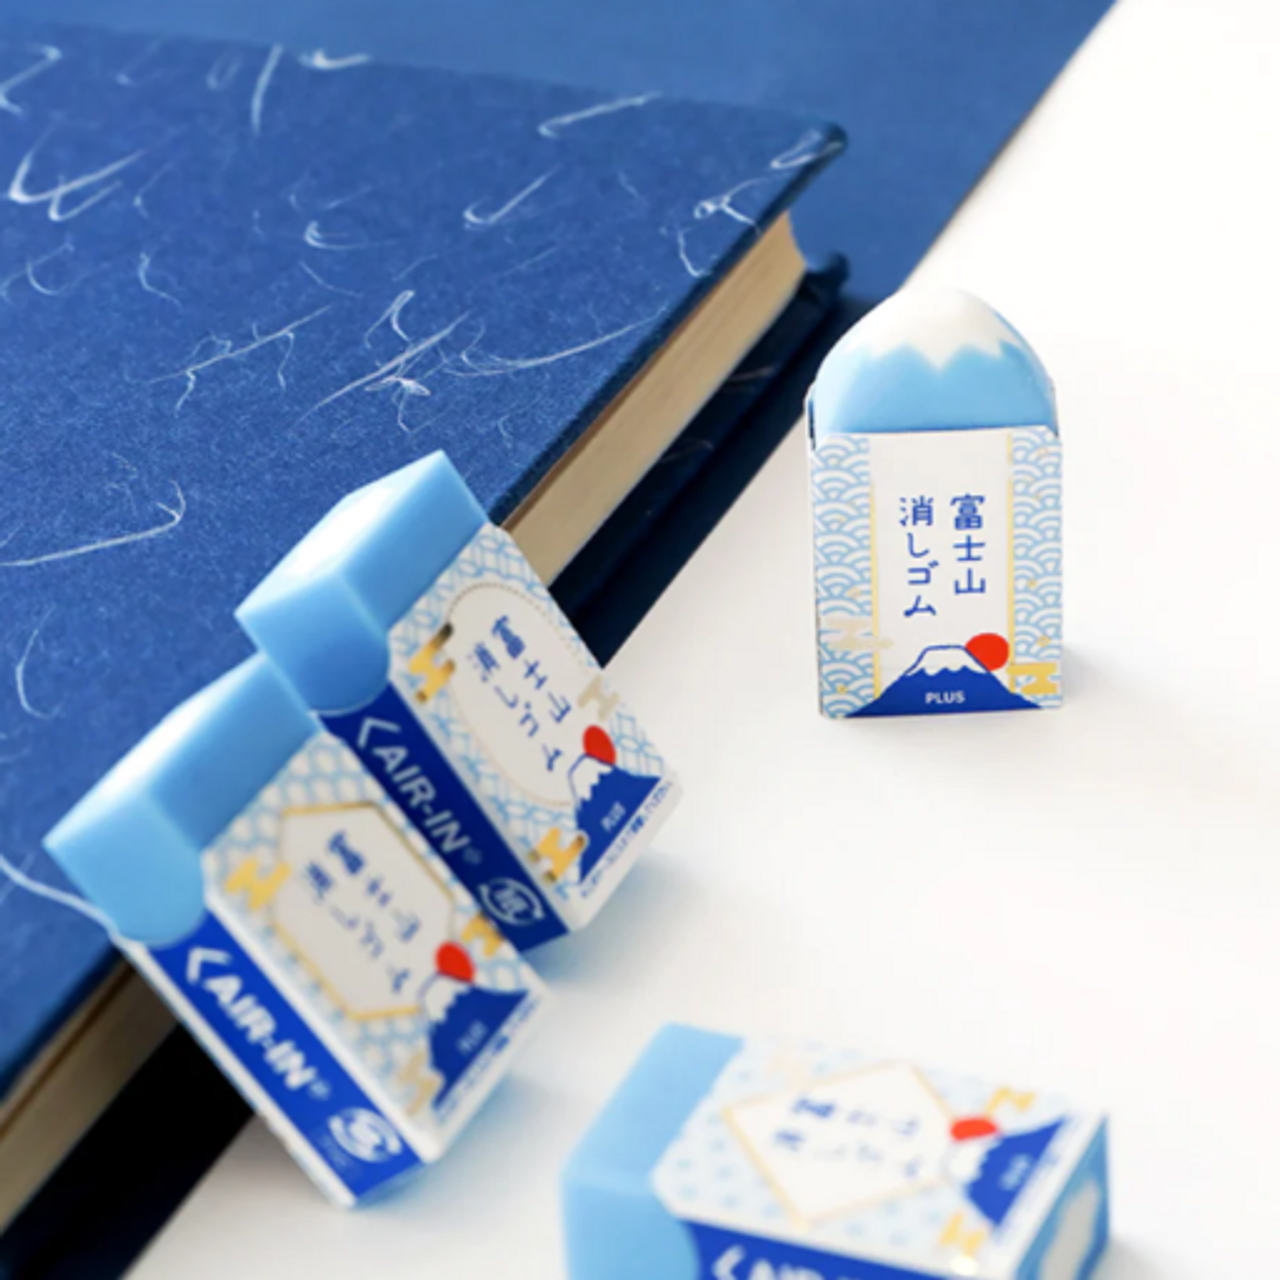 Mount Fuji Eraser Plus Air-in Plastic Eraser for Pencils Novelty